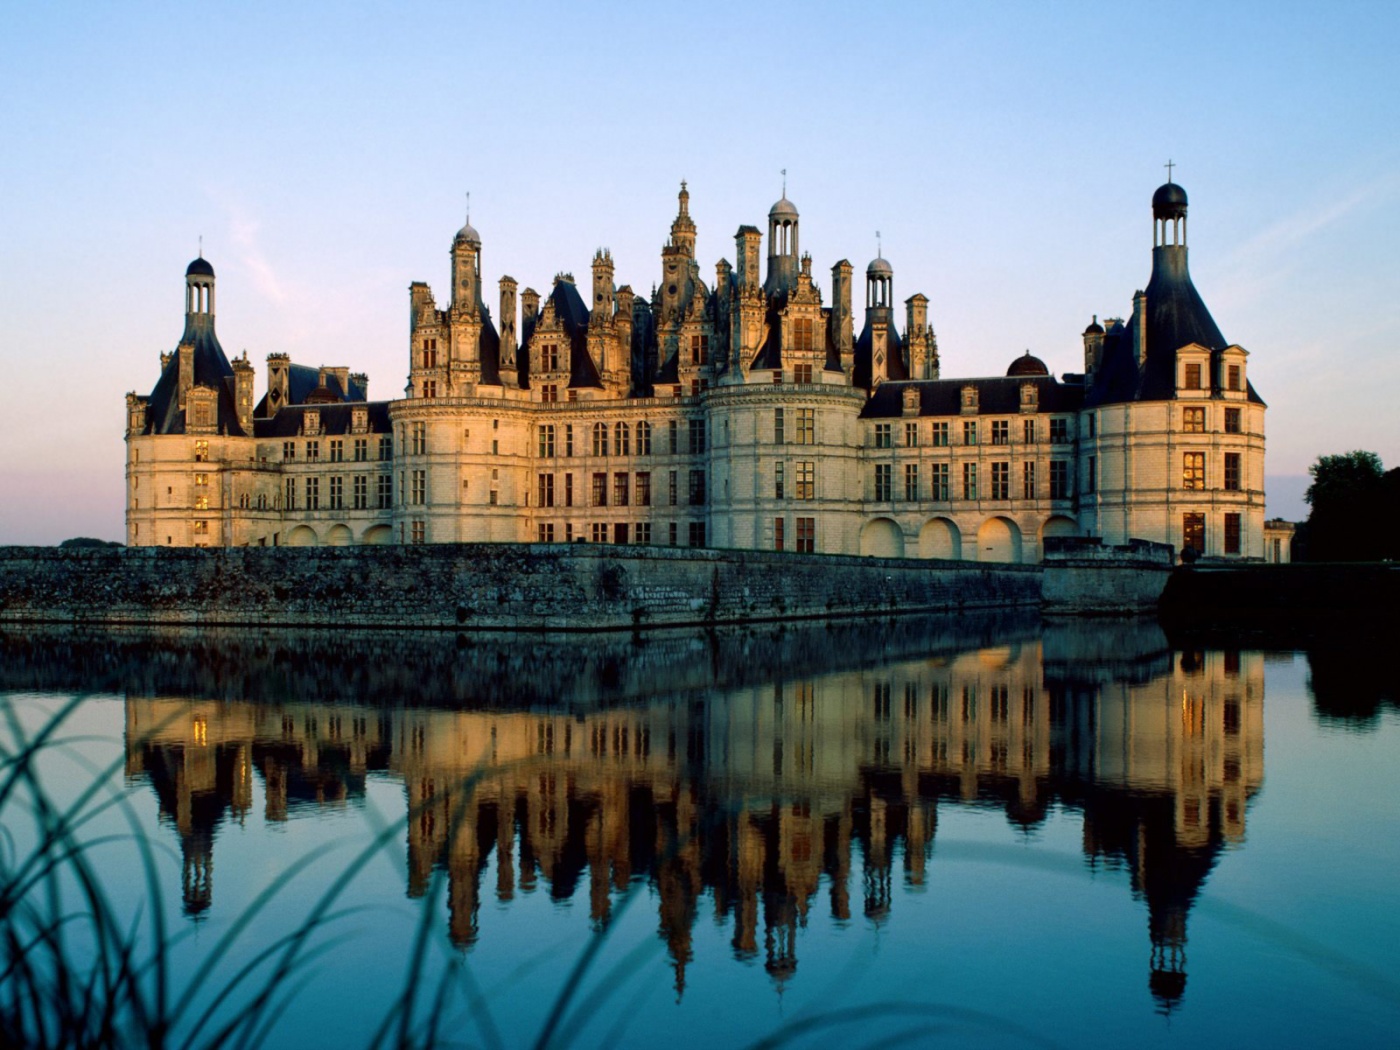 Chateau de Chambord in France, a beautiful HD desktop wallpaper